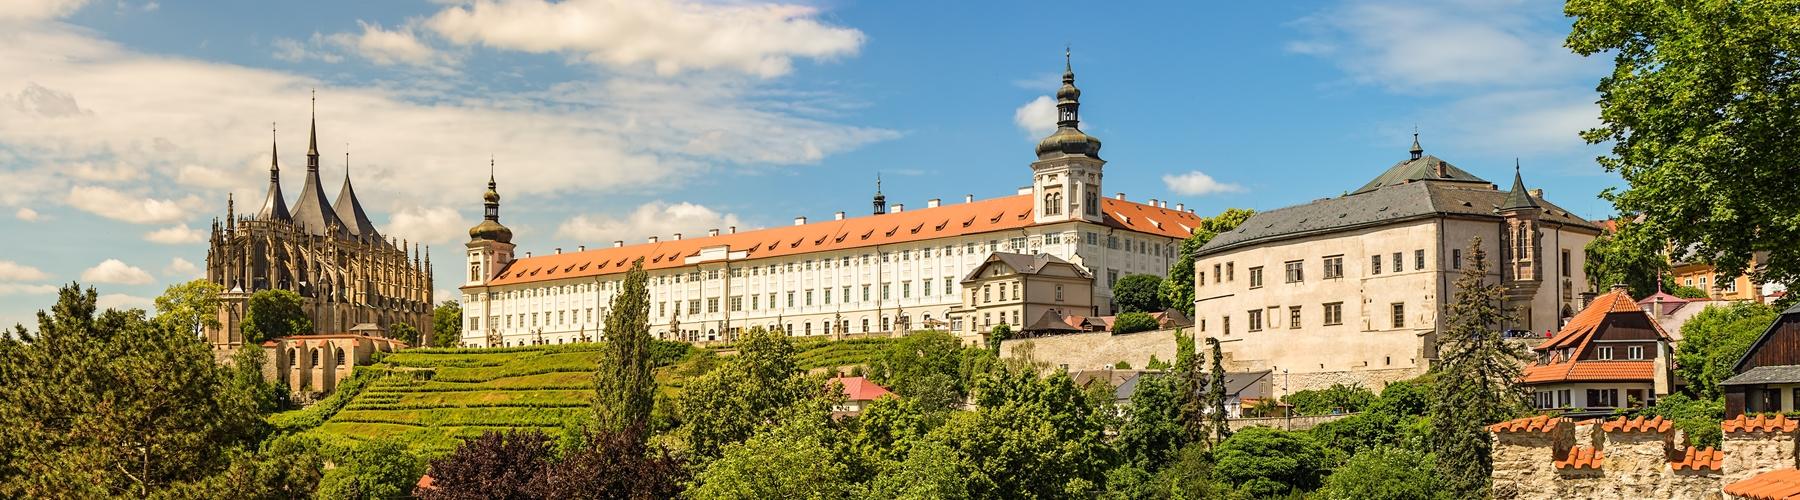 El tour Kutná Hora permite conocer una ciudad que, durante muchos siglos, ostentó de rivalidad con Praga. Una ciudad de encanto y magia.